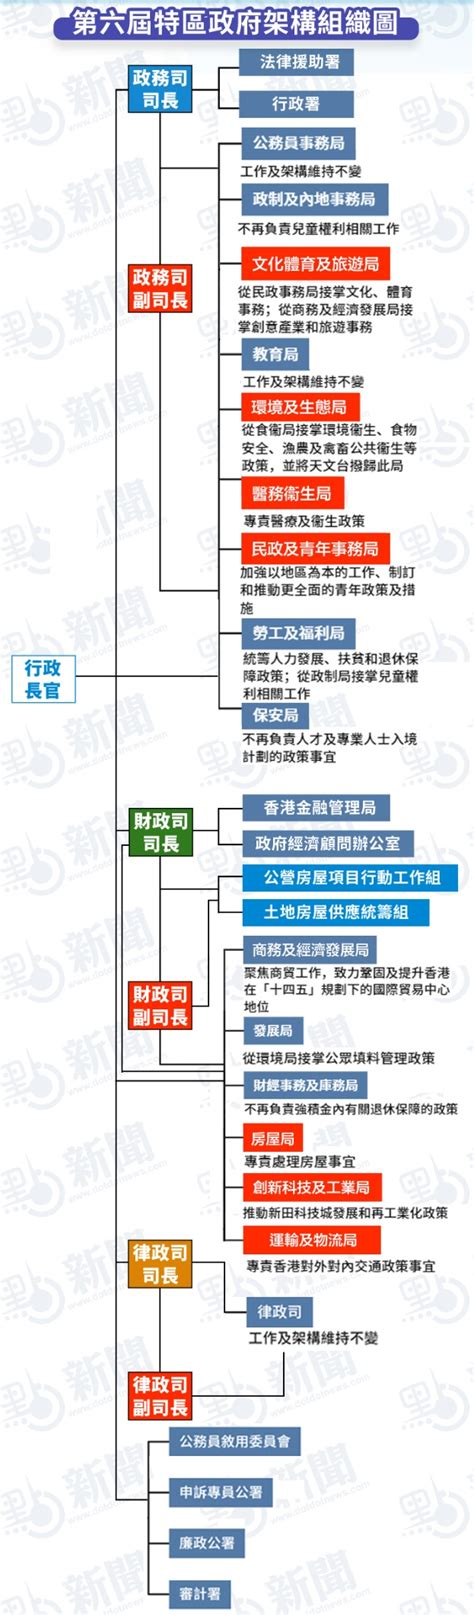 香港特区政府架构重组方案获通过 李家超表示欢迎_新闻频道_中华网